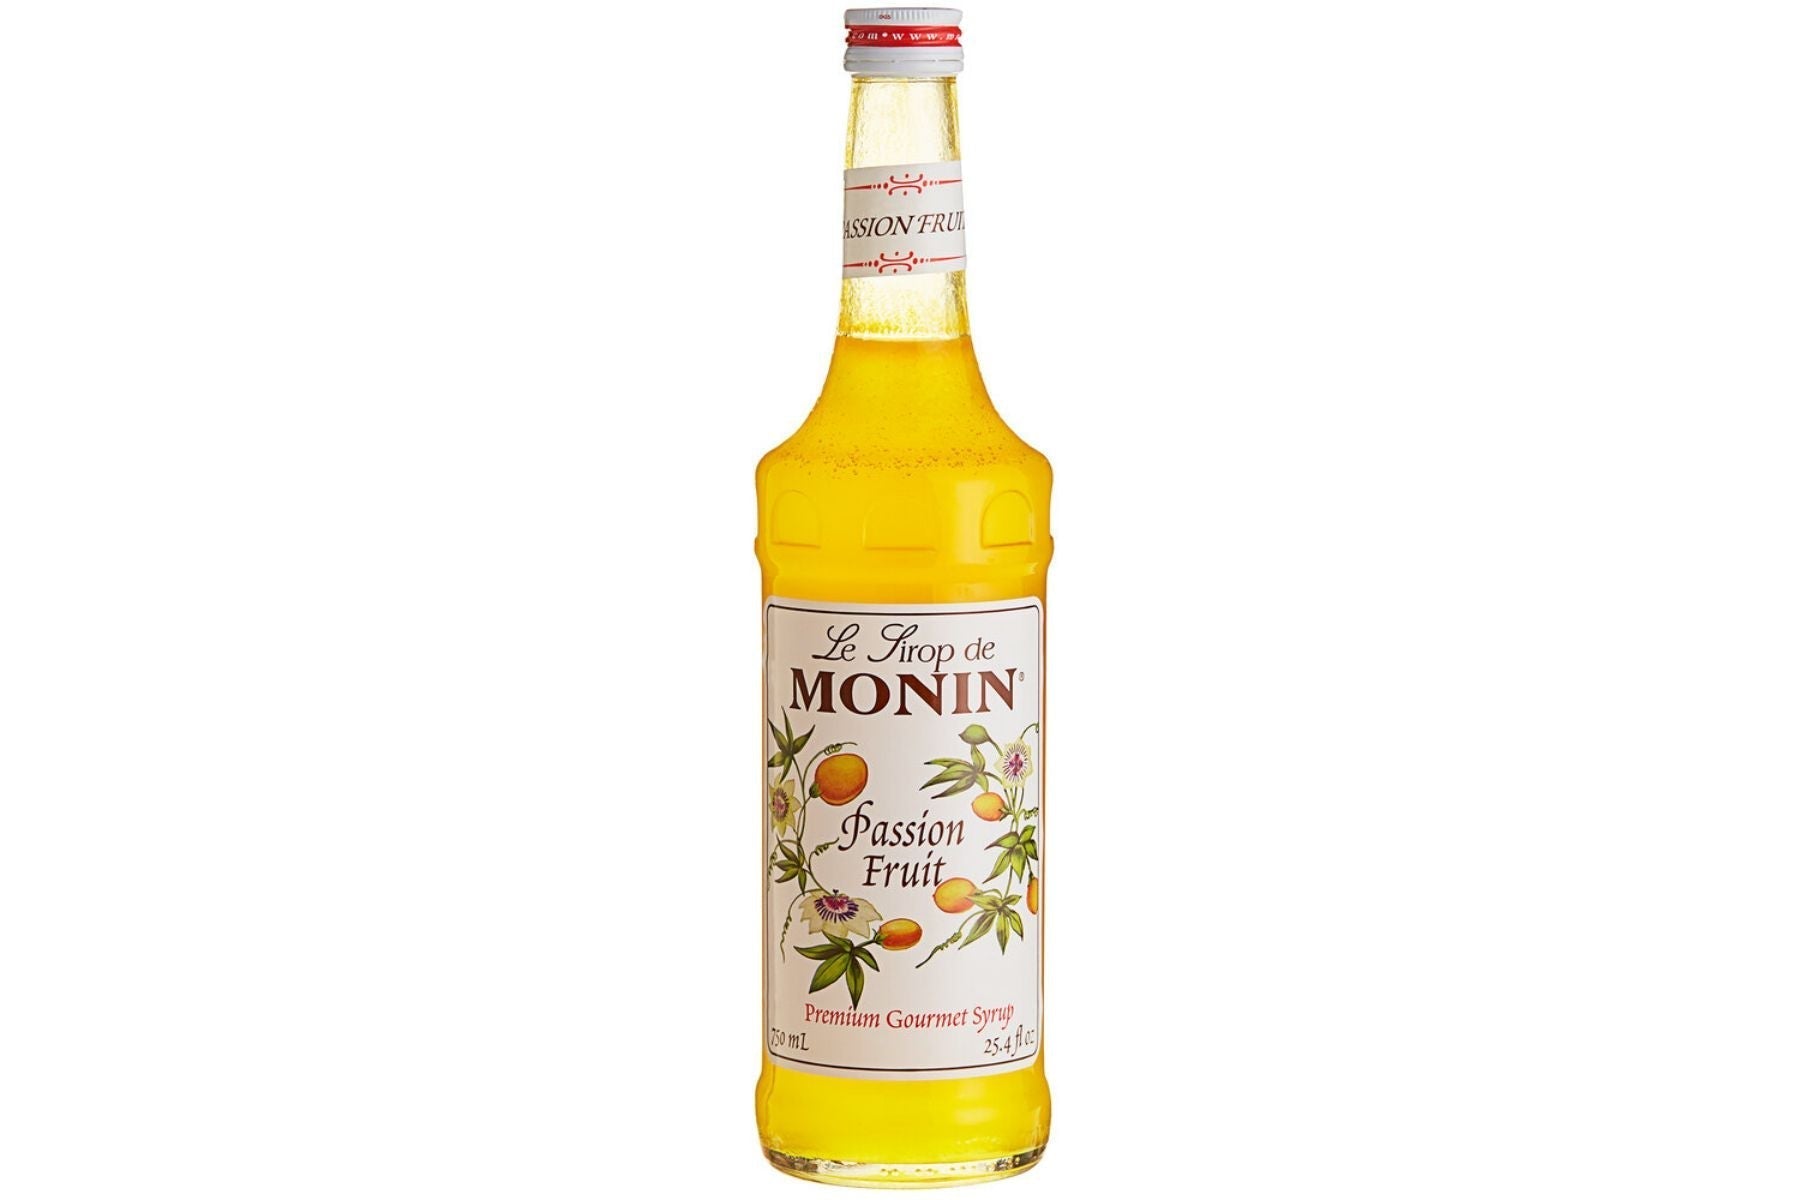 Monin Classic Syrup - 1L Plastic Bottle: Passion Fruit